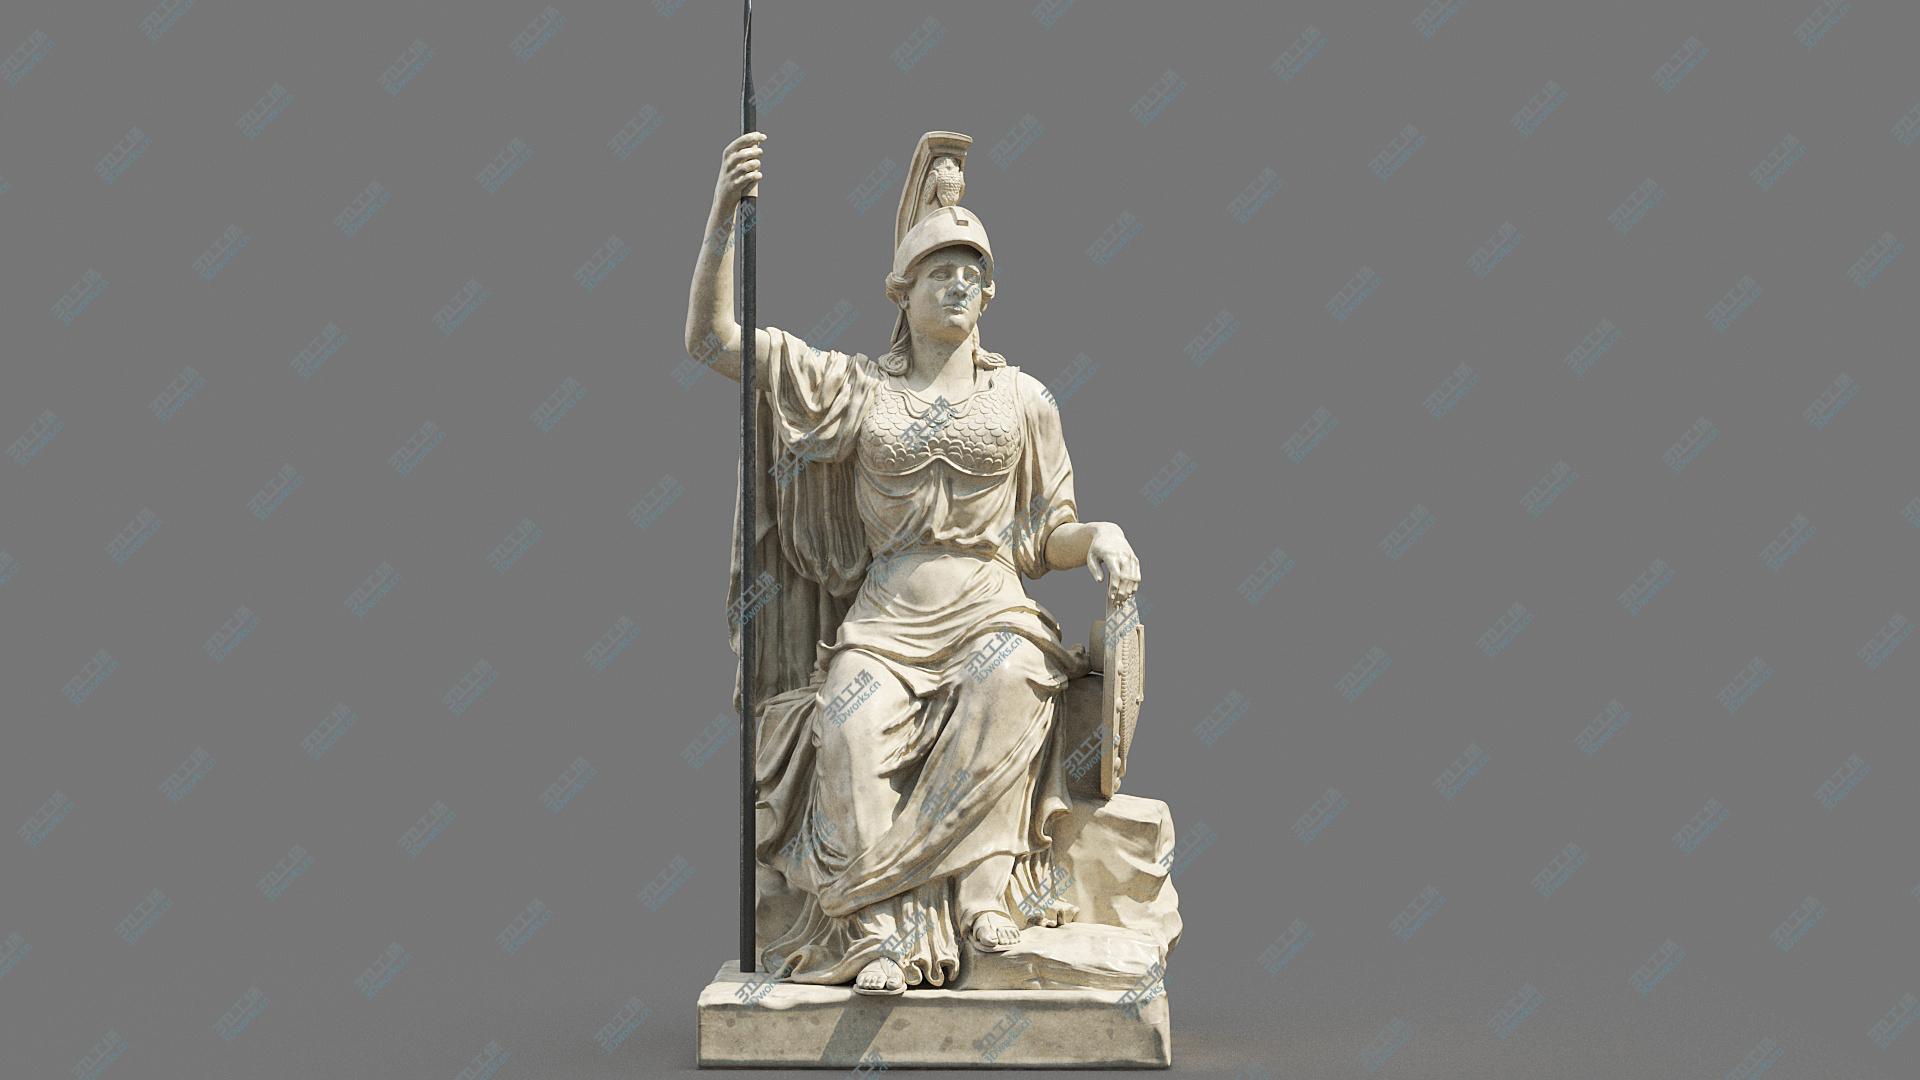 images/goods_img/202104094/Minerva Statue 3D model/1.jpg